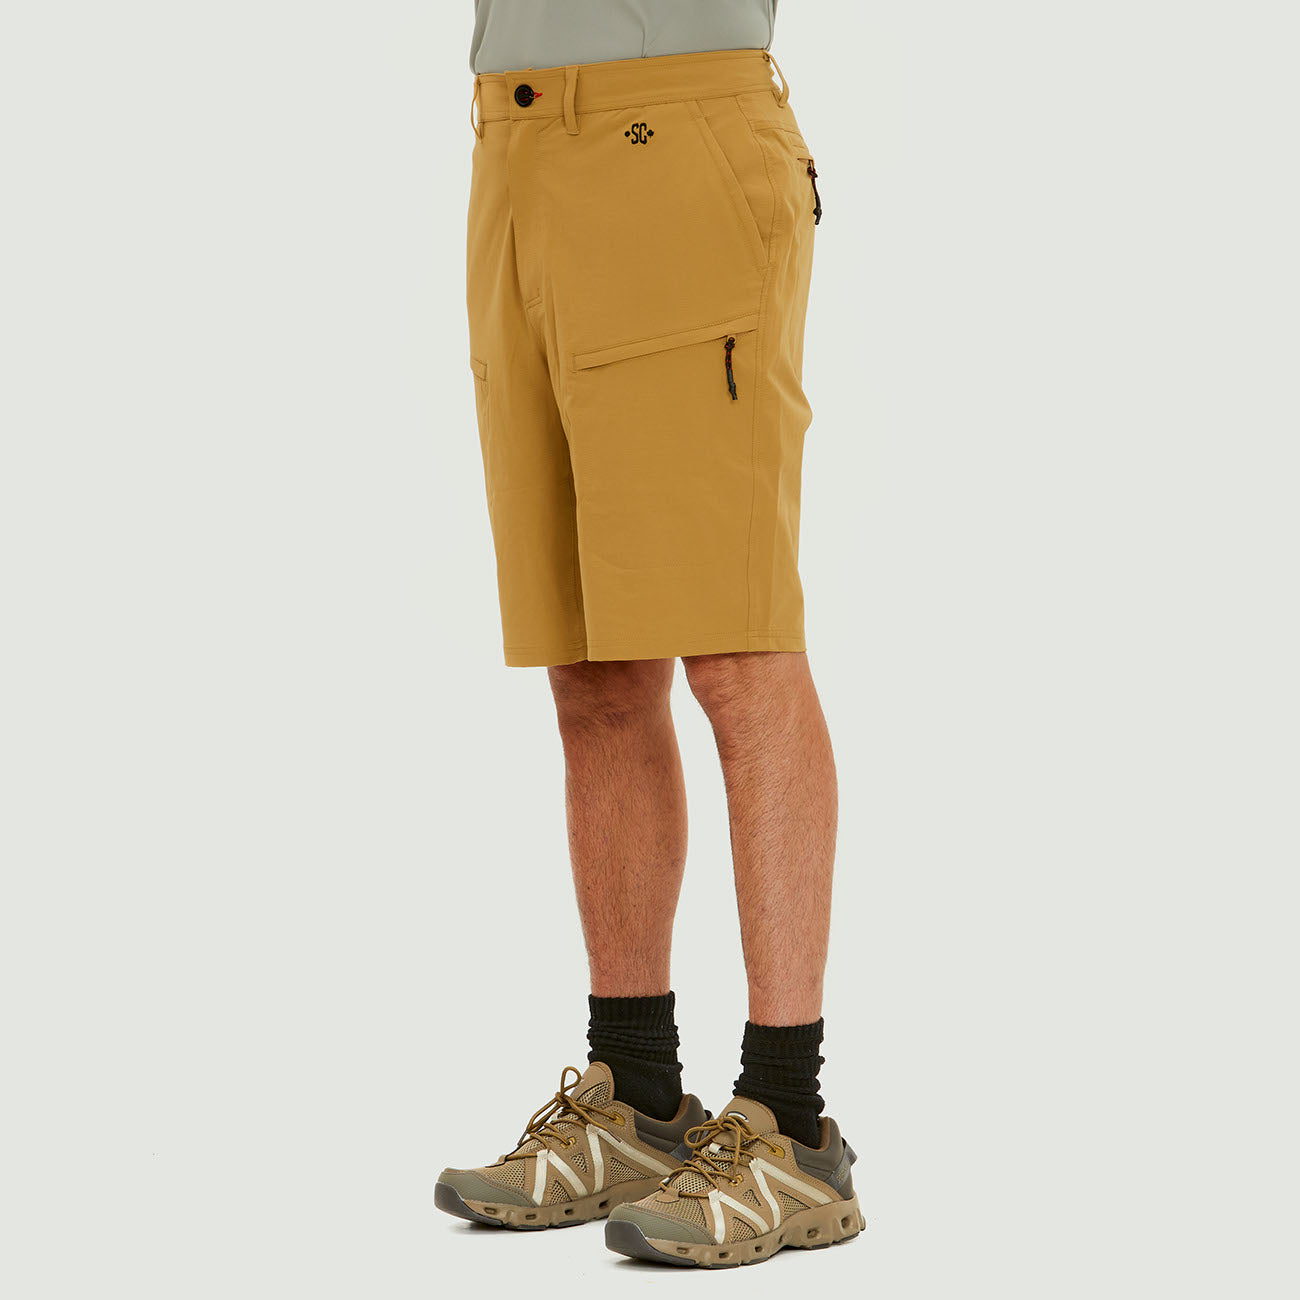 Men's "Fraser" Fishing Shorts